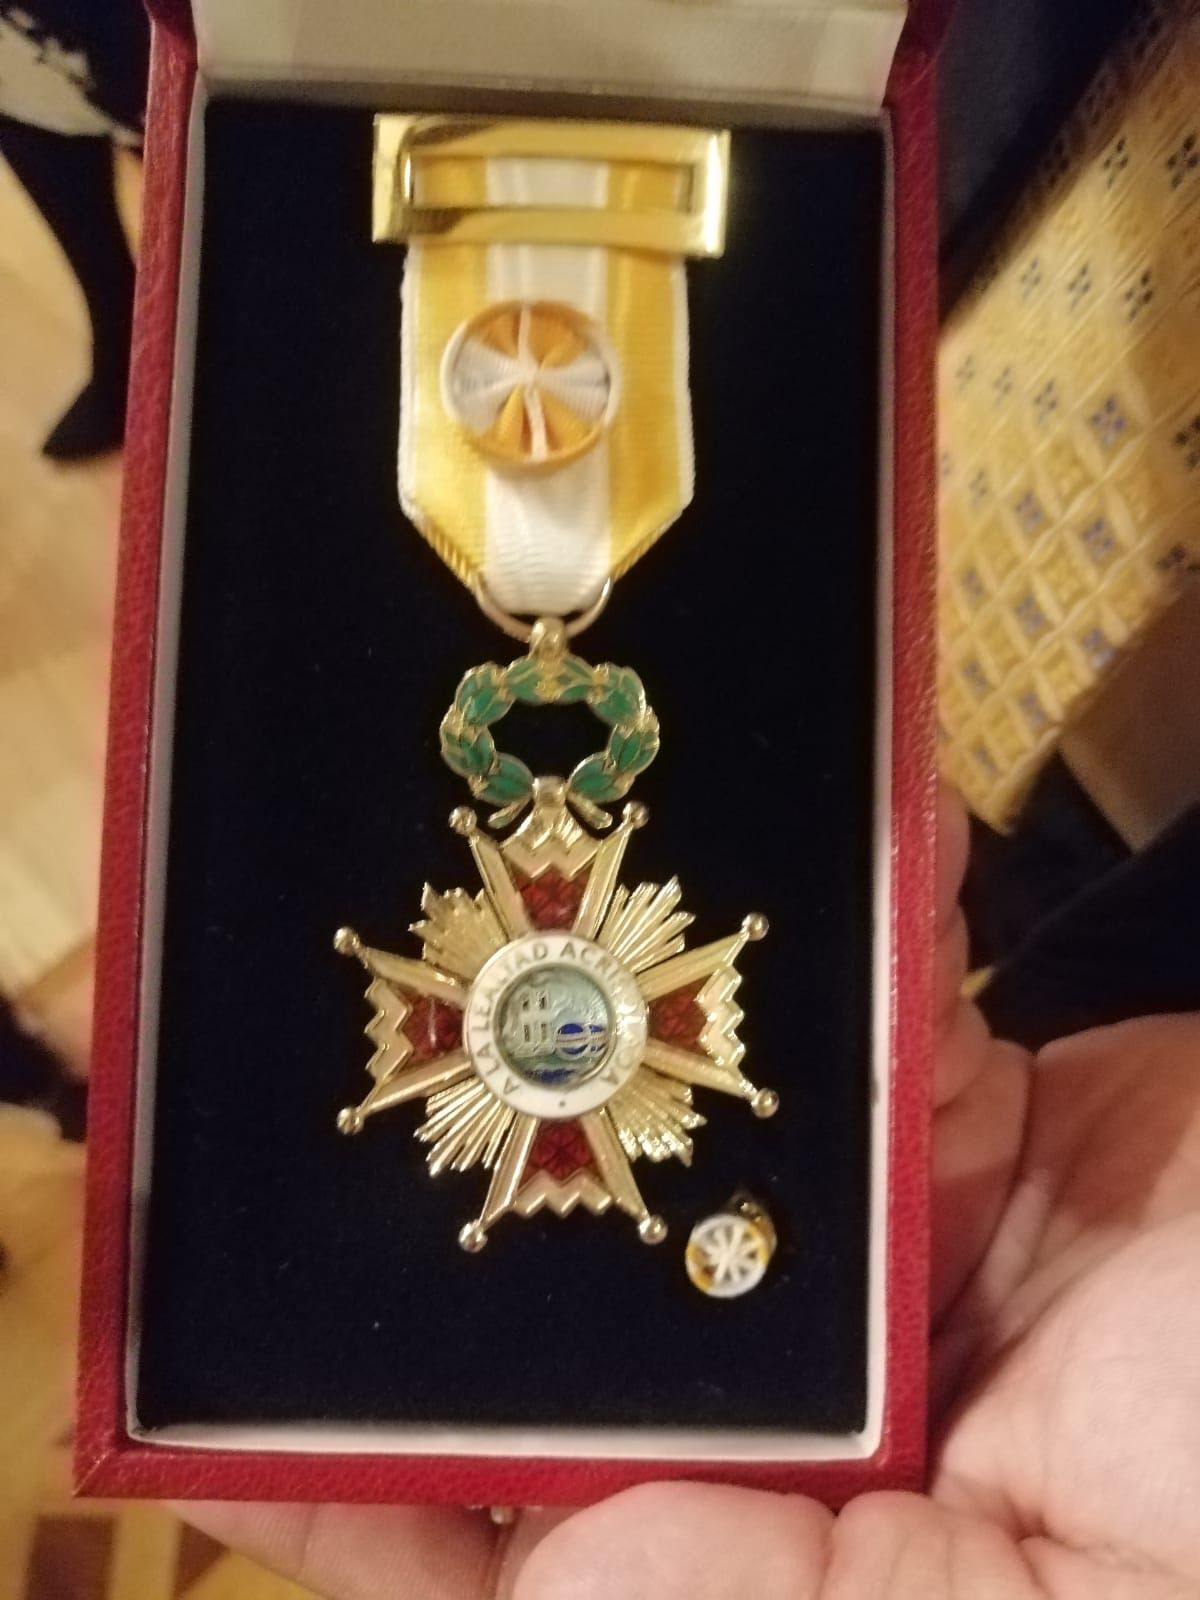 A nombre de su Majestad, el Rey don Felipe VI, recibió la Cruz de Oficial de la Orden de Isabel La Católica, por su labor como impulsor de la cultura